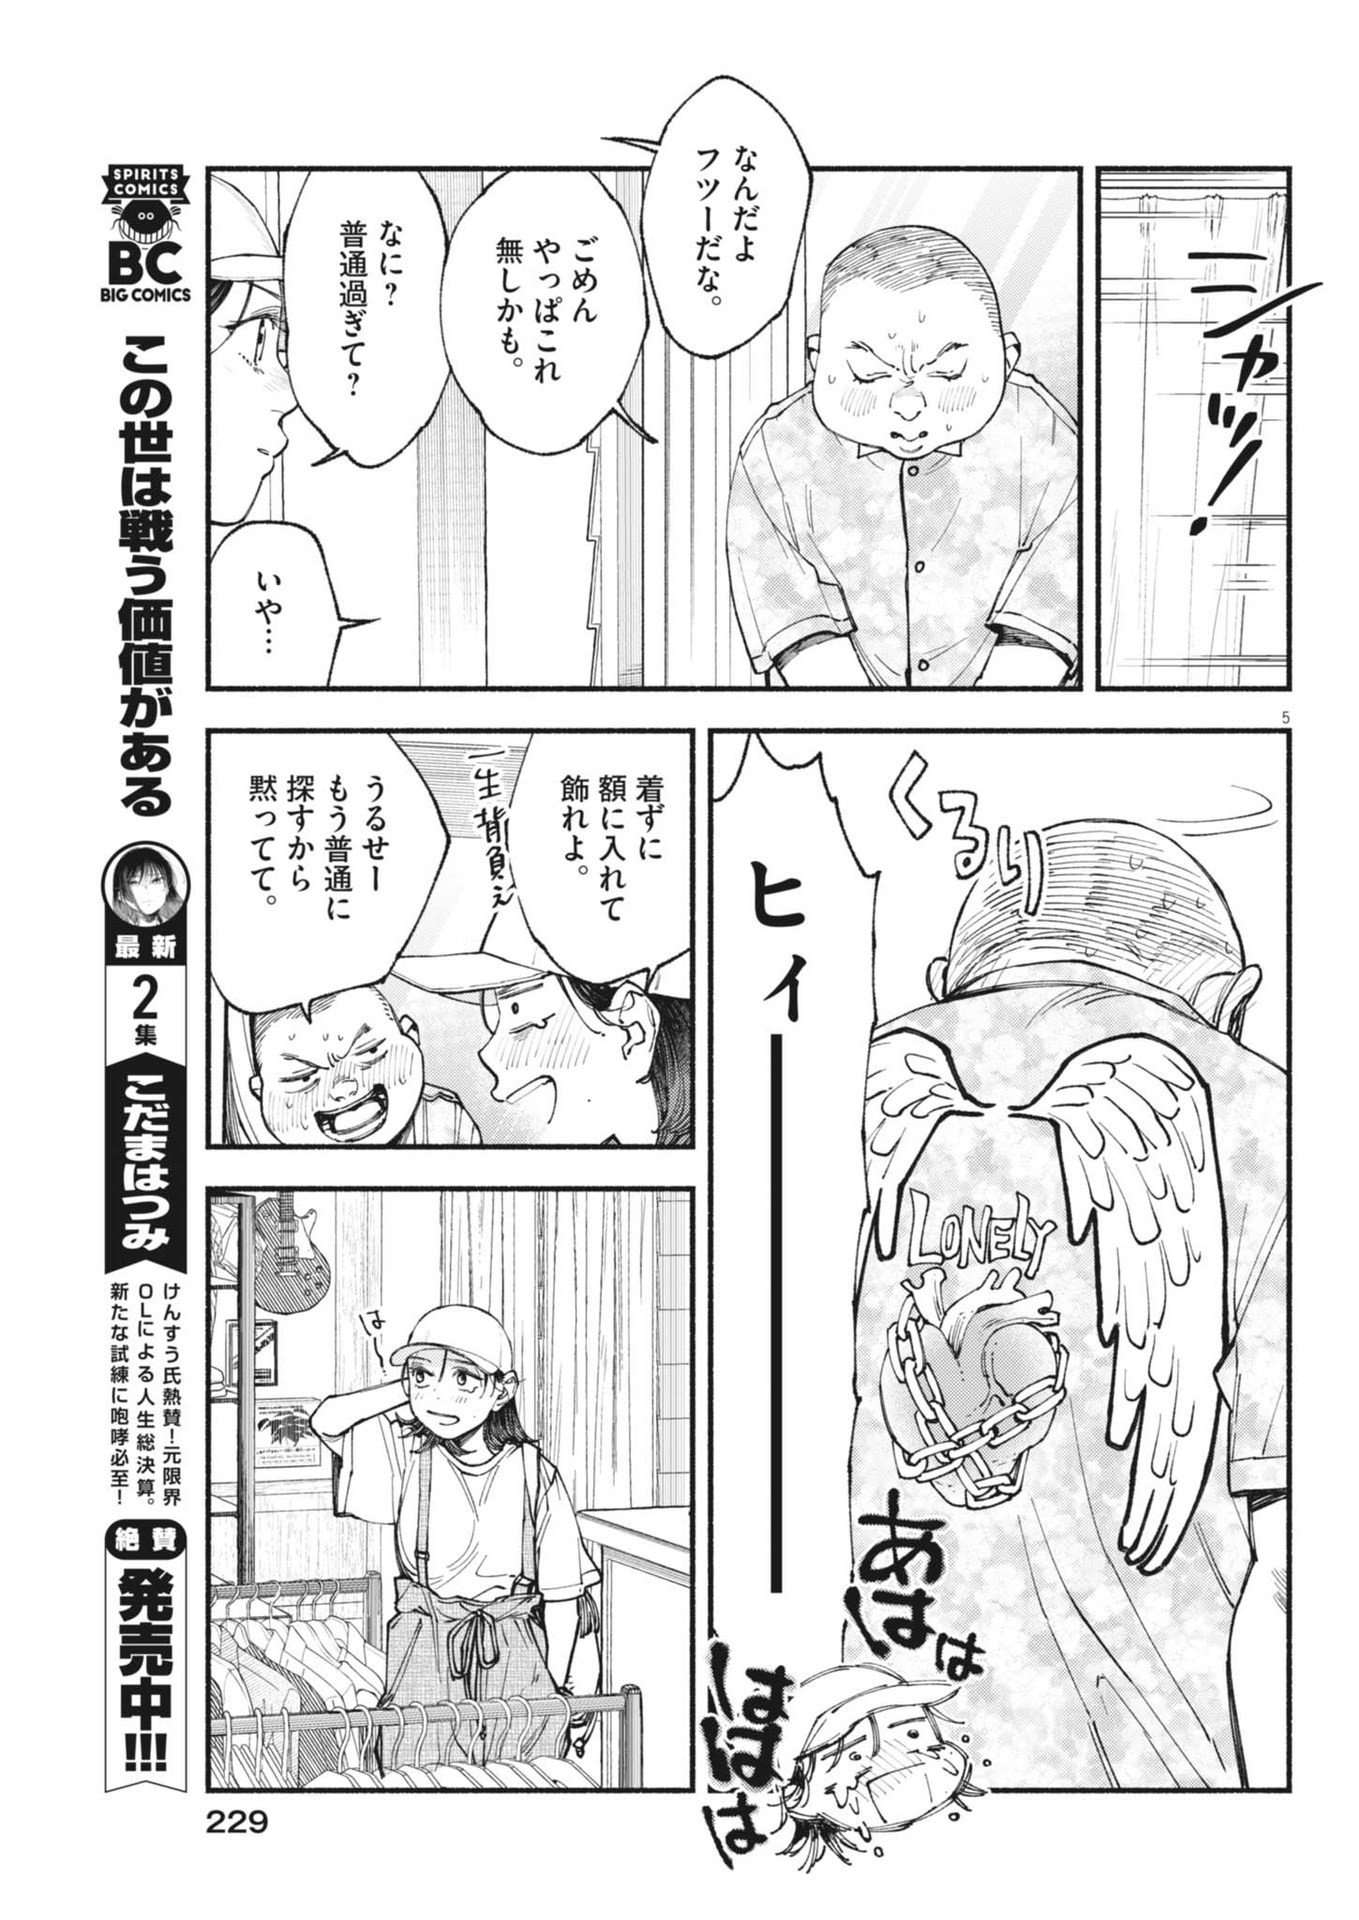 Konoyo wa Tatakau Kachi ga Aru  - Chapter 27 - Page 5